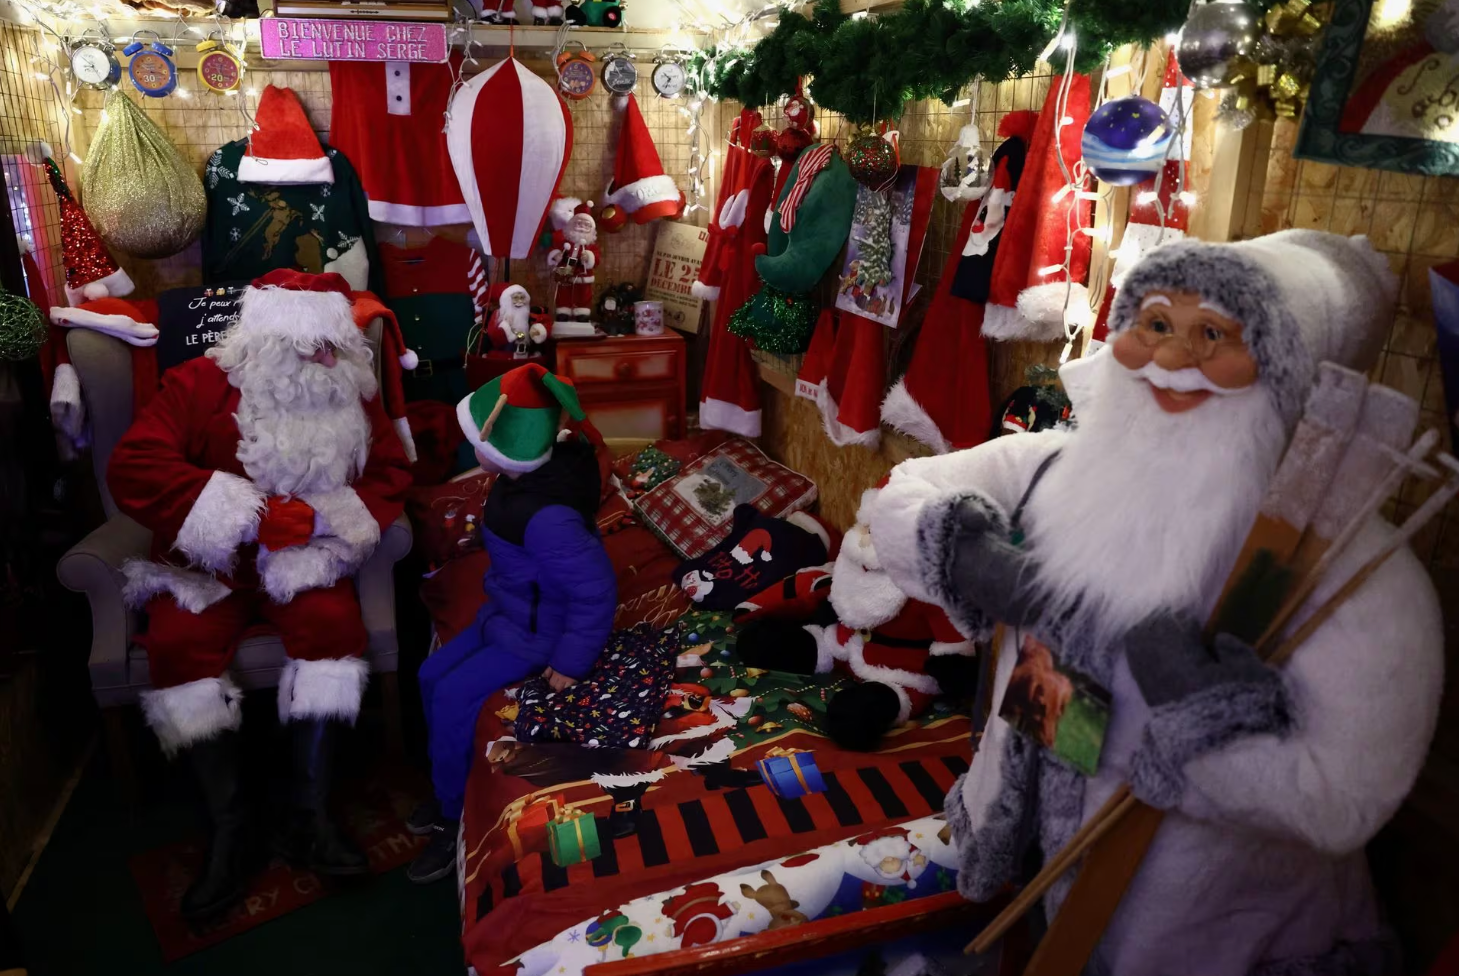 Ông già Noel trò chuyện với một đứa trẻ tại đô thị Beauvechain, Bỉ vào ngày 16-12 - Ảnh: REUTERS